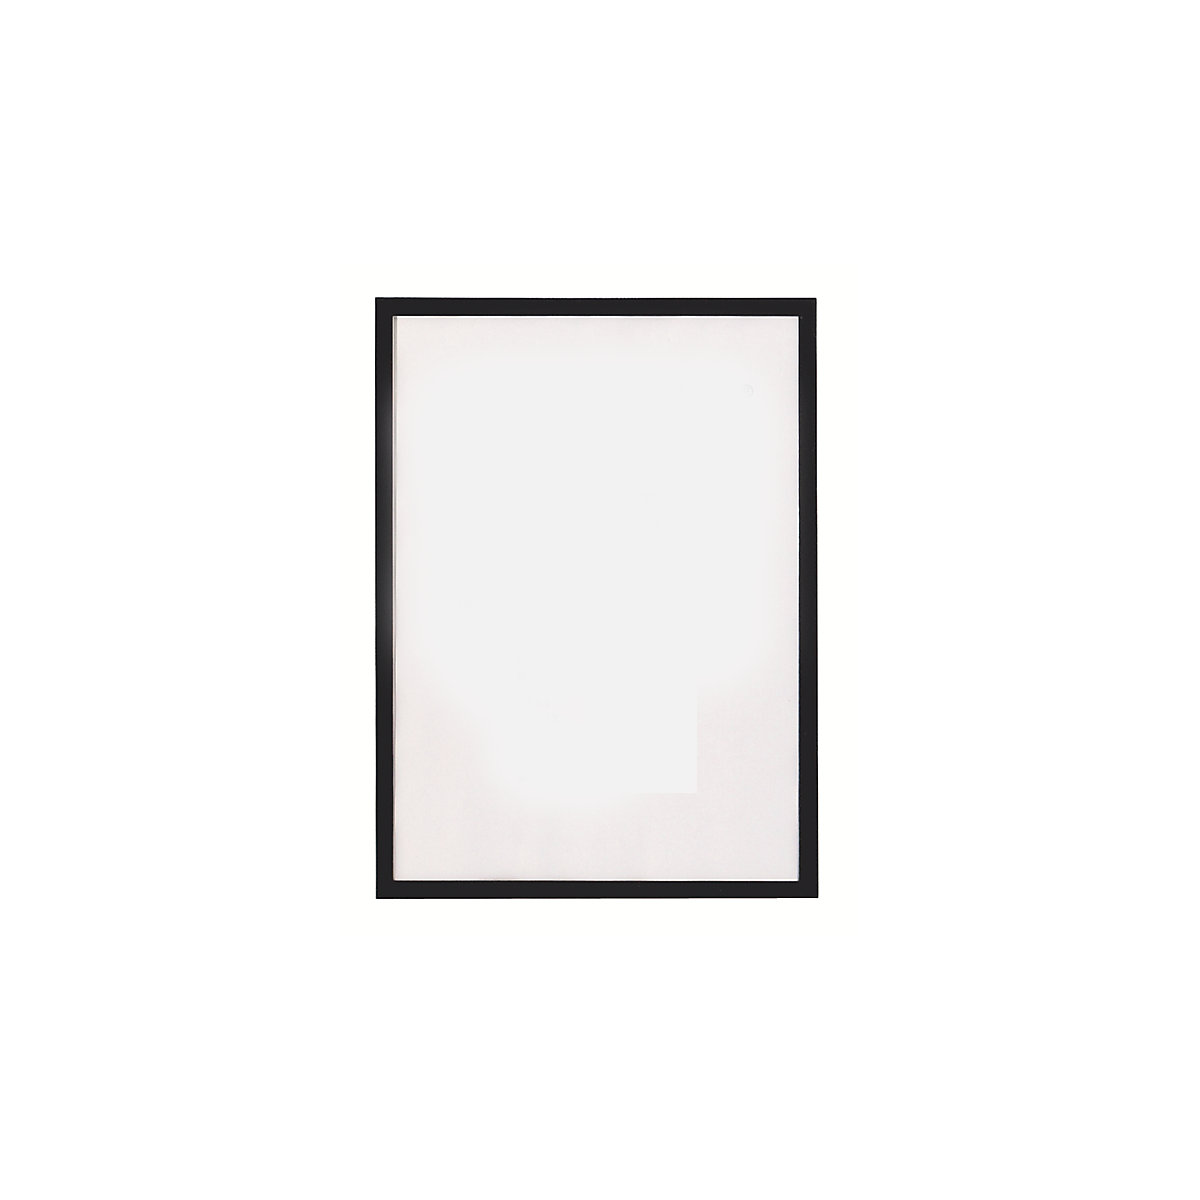 magnetofix vision panel – magnetoplan, format A4, pack of 5, black frame-10